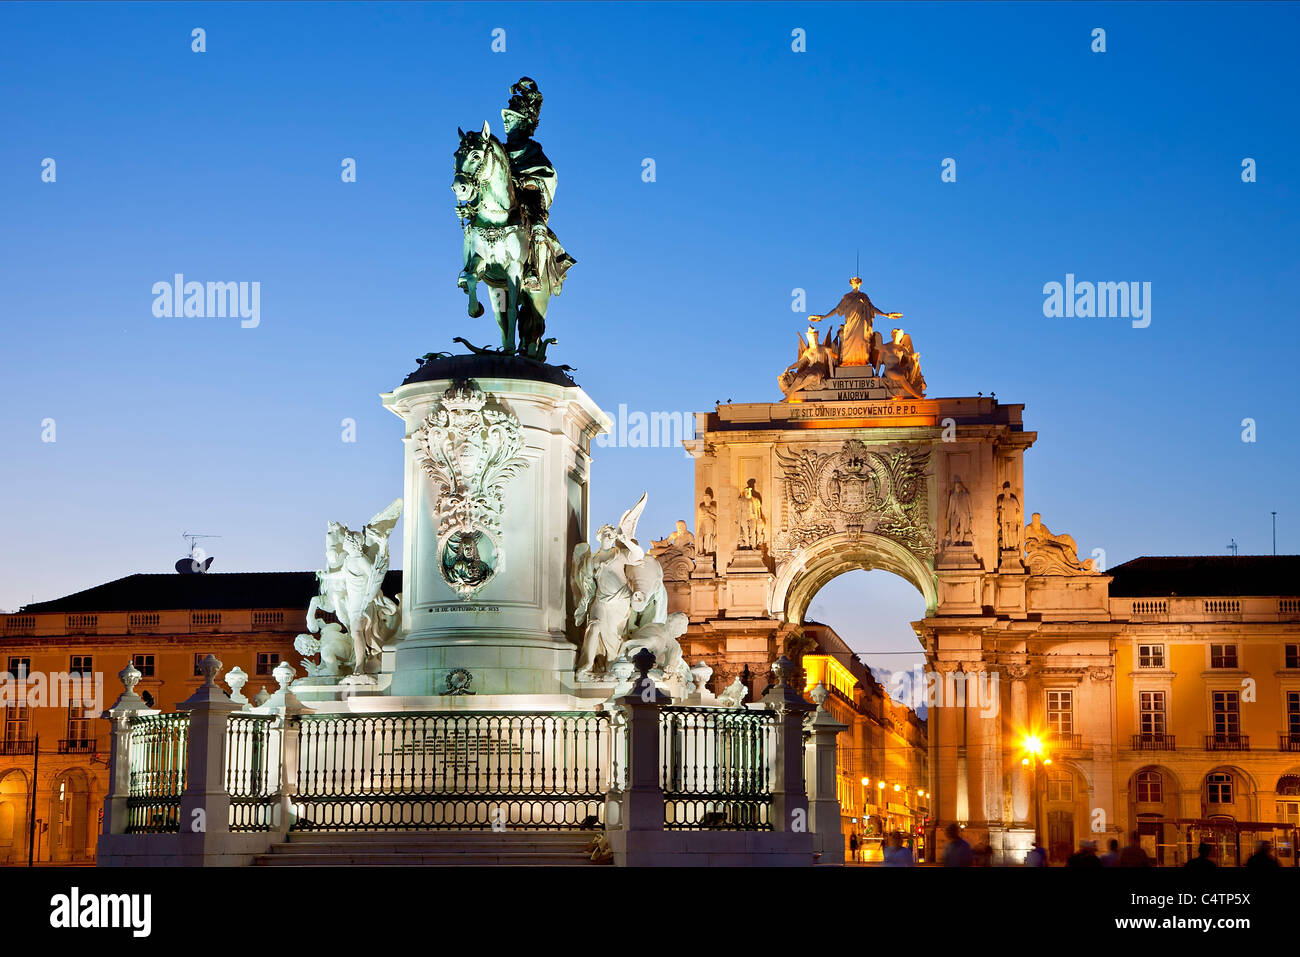 Europe, Portugal, Lisbon, Statue of King Jose I by Joaquim Machado de Castro on Praca do Comercio Stock Photo